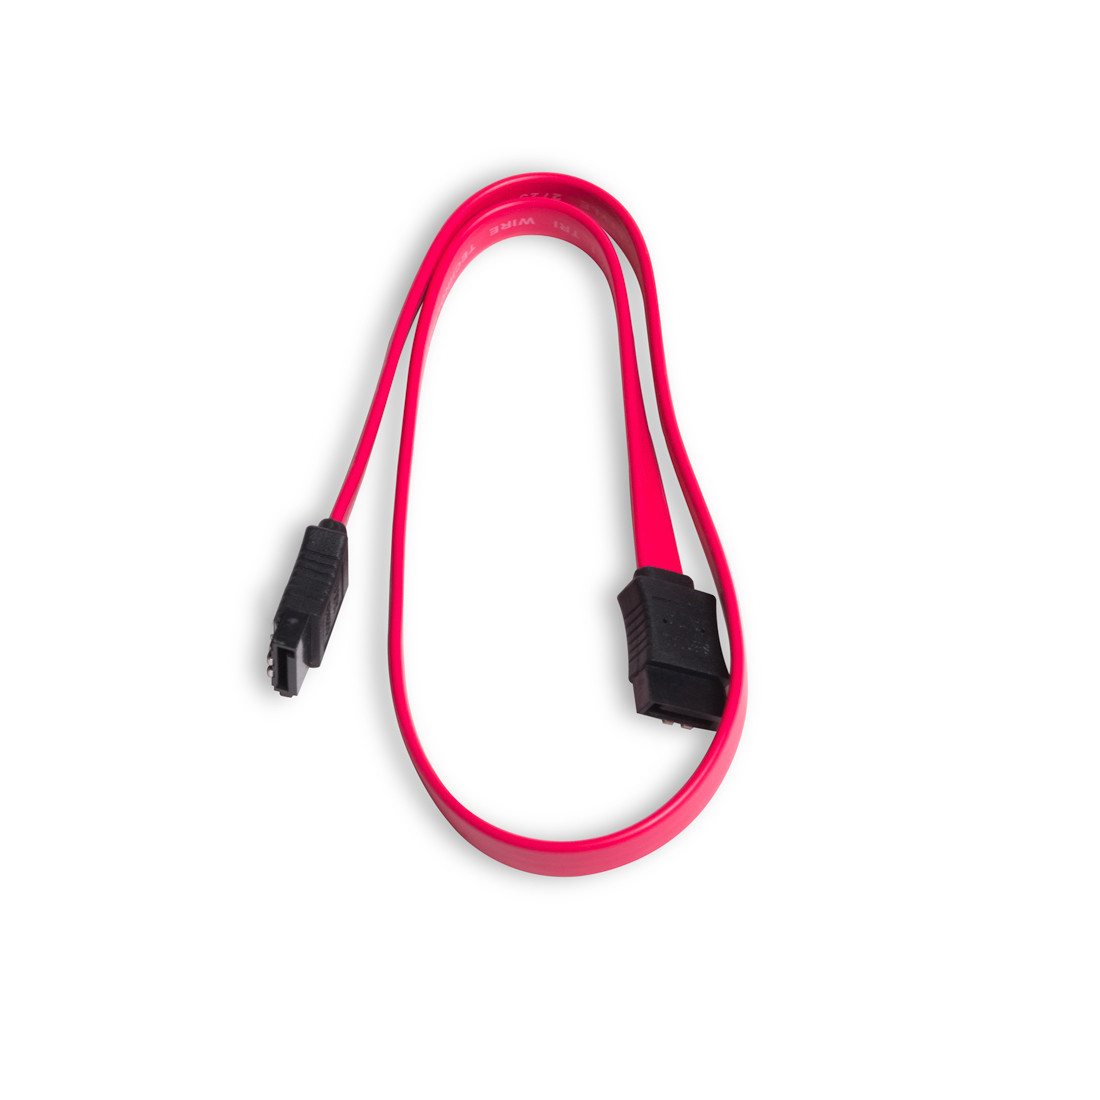 Интерфейсный кабель iPower SATA 12 в., фото 1